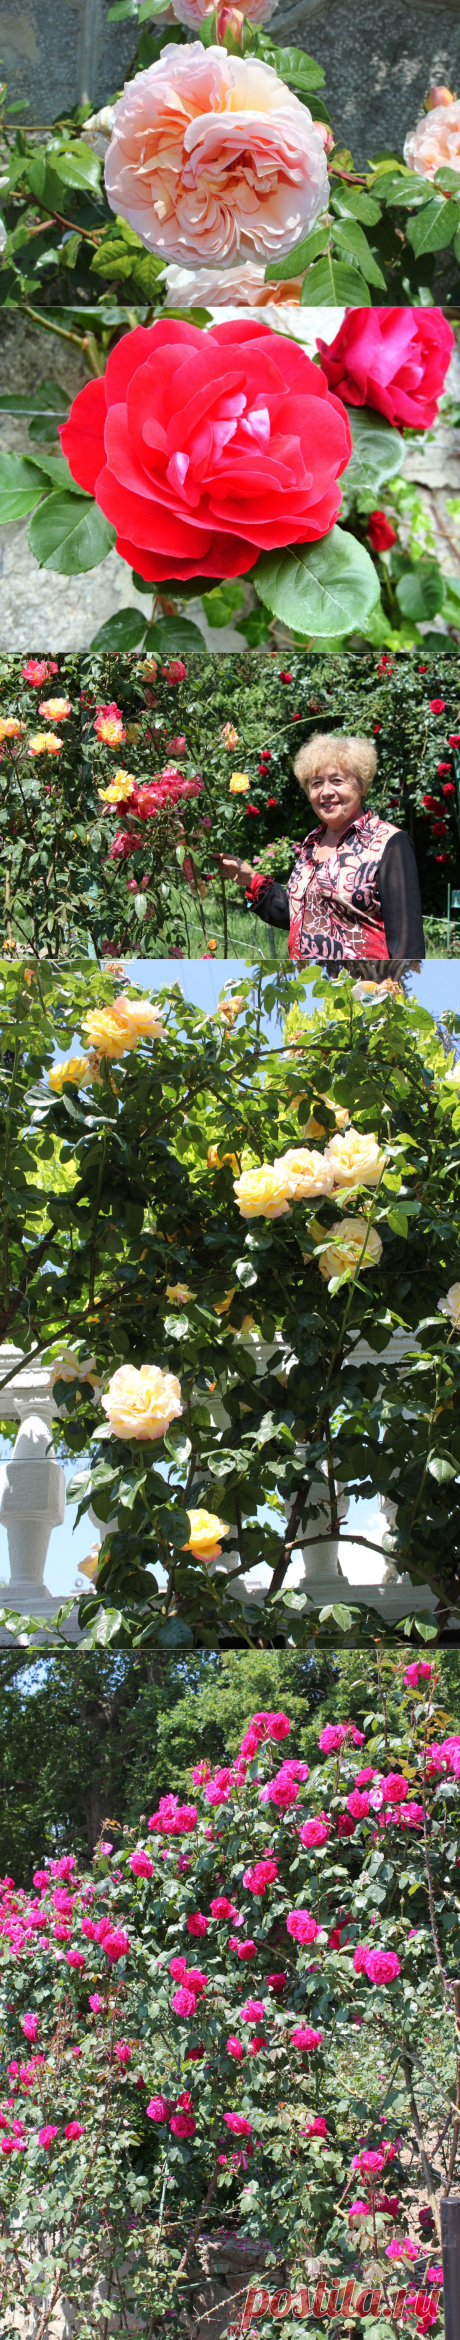 С конца мая – в июне наступает пора первого массового цветения многих сортов роз из различных садовых групп, но подлинным украшением Сада являются плетистые розы. Роскошь цветения, пленяющие ароматы, делают их настоящими «цветочными аристократками».